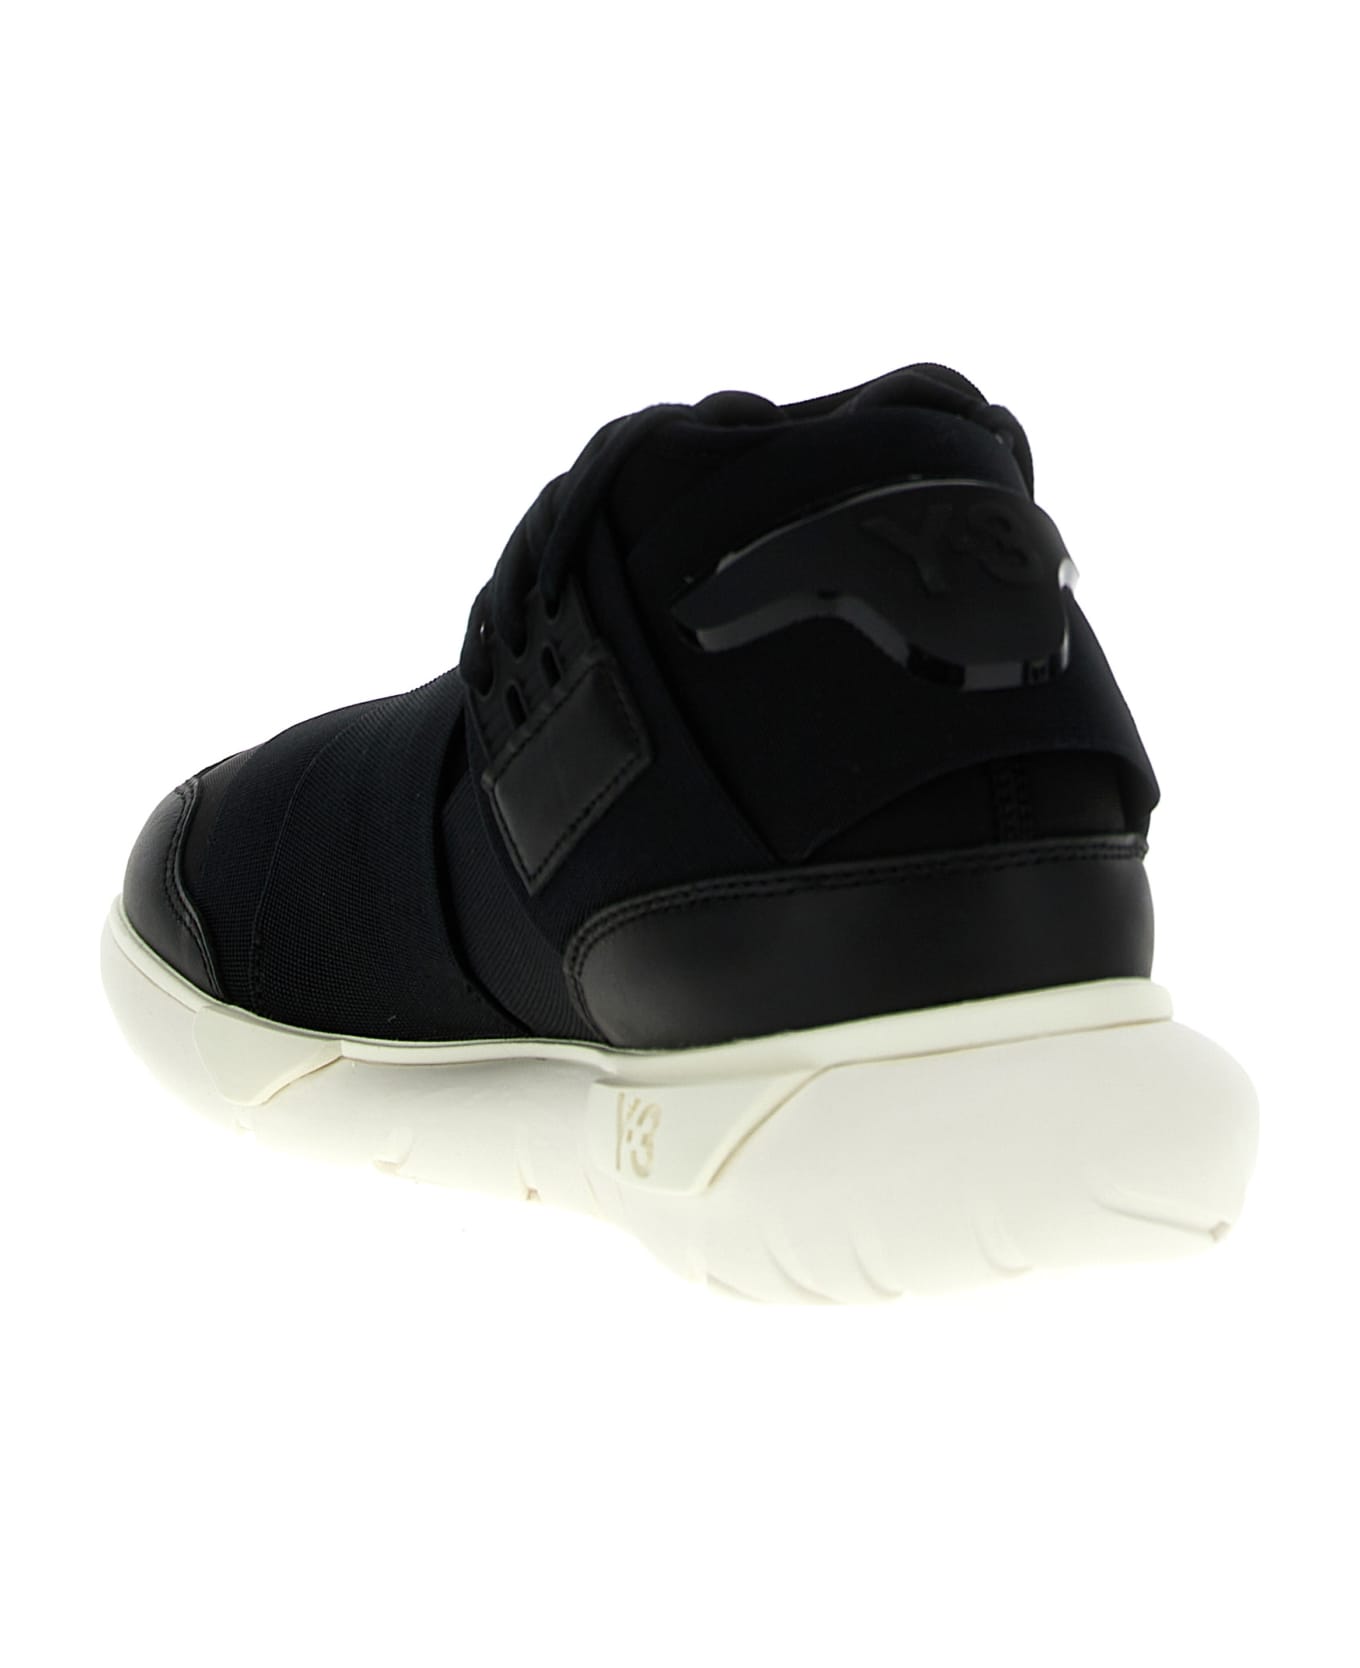 Y-3 'qasa' Sneakers - White/Black スニーカー